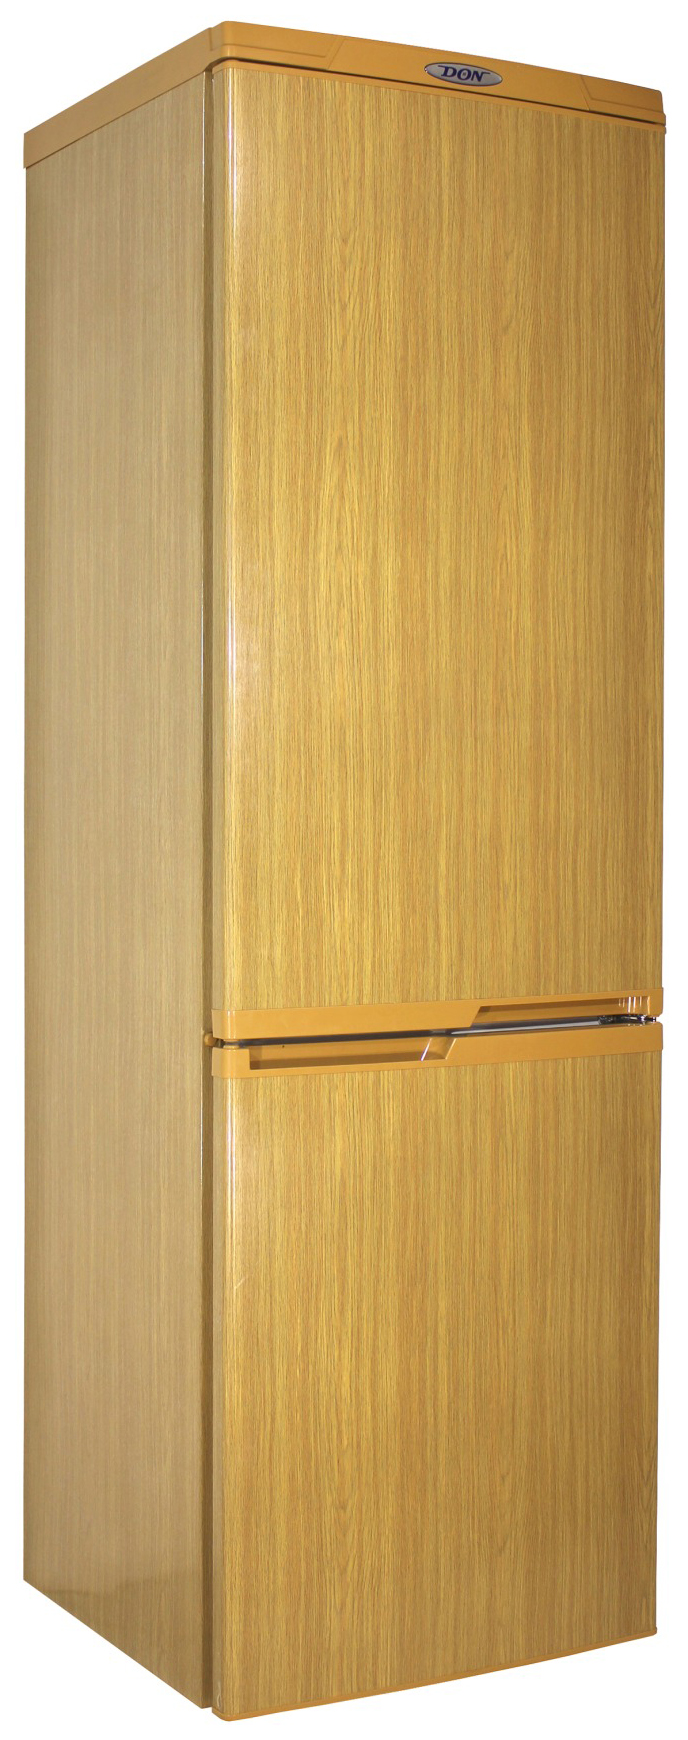 Холодильник DON R 291 DUB коричневый холодильник tesler rc 55 коричневый